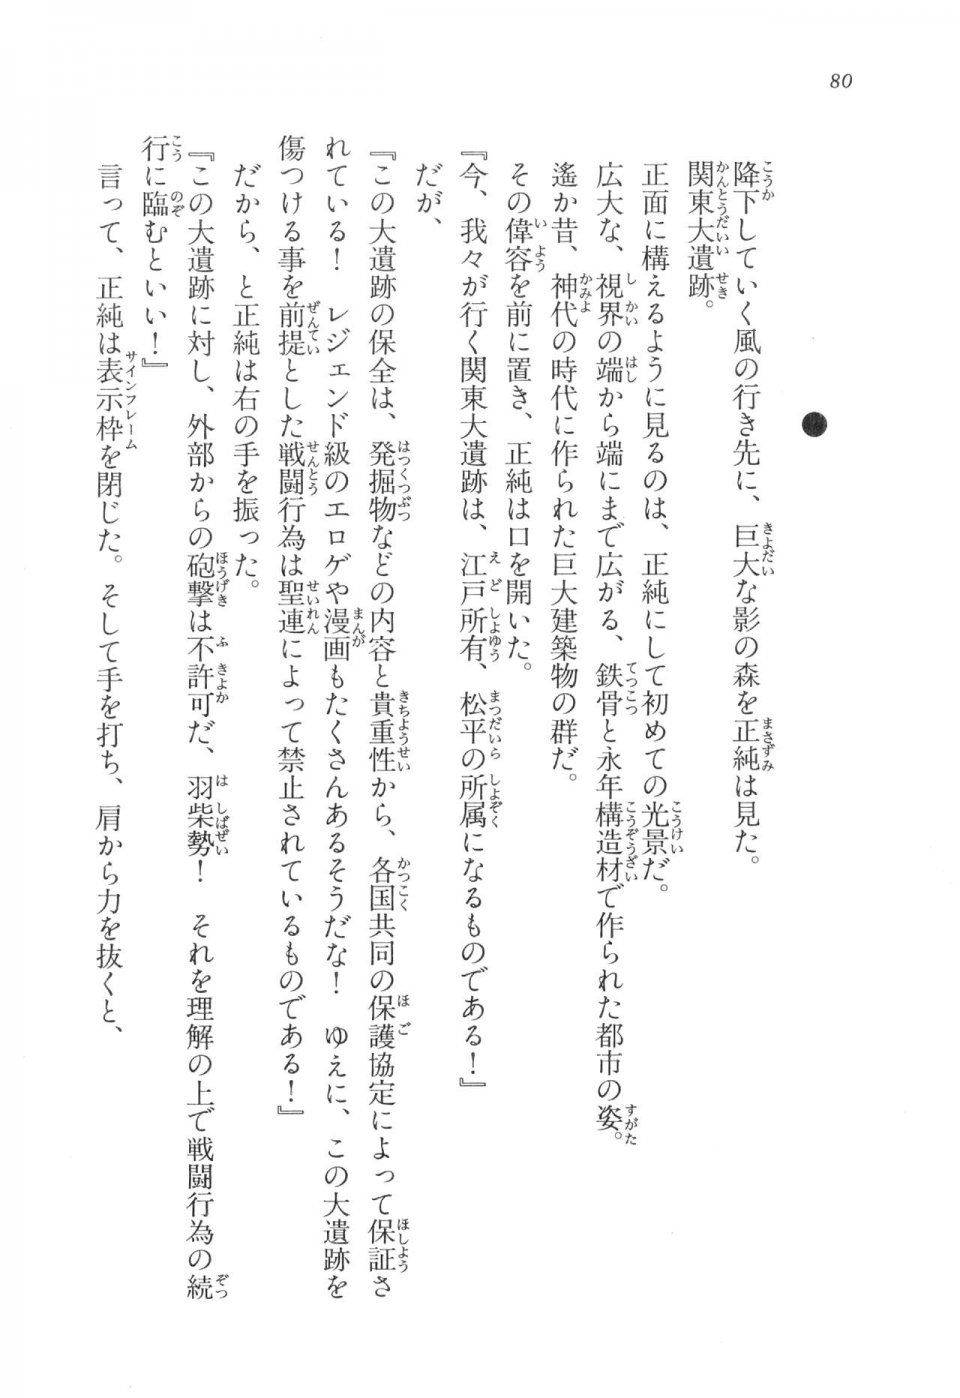 Kyoukai Senjou no Horizon LN Vol 17(7B) - Photo #80